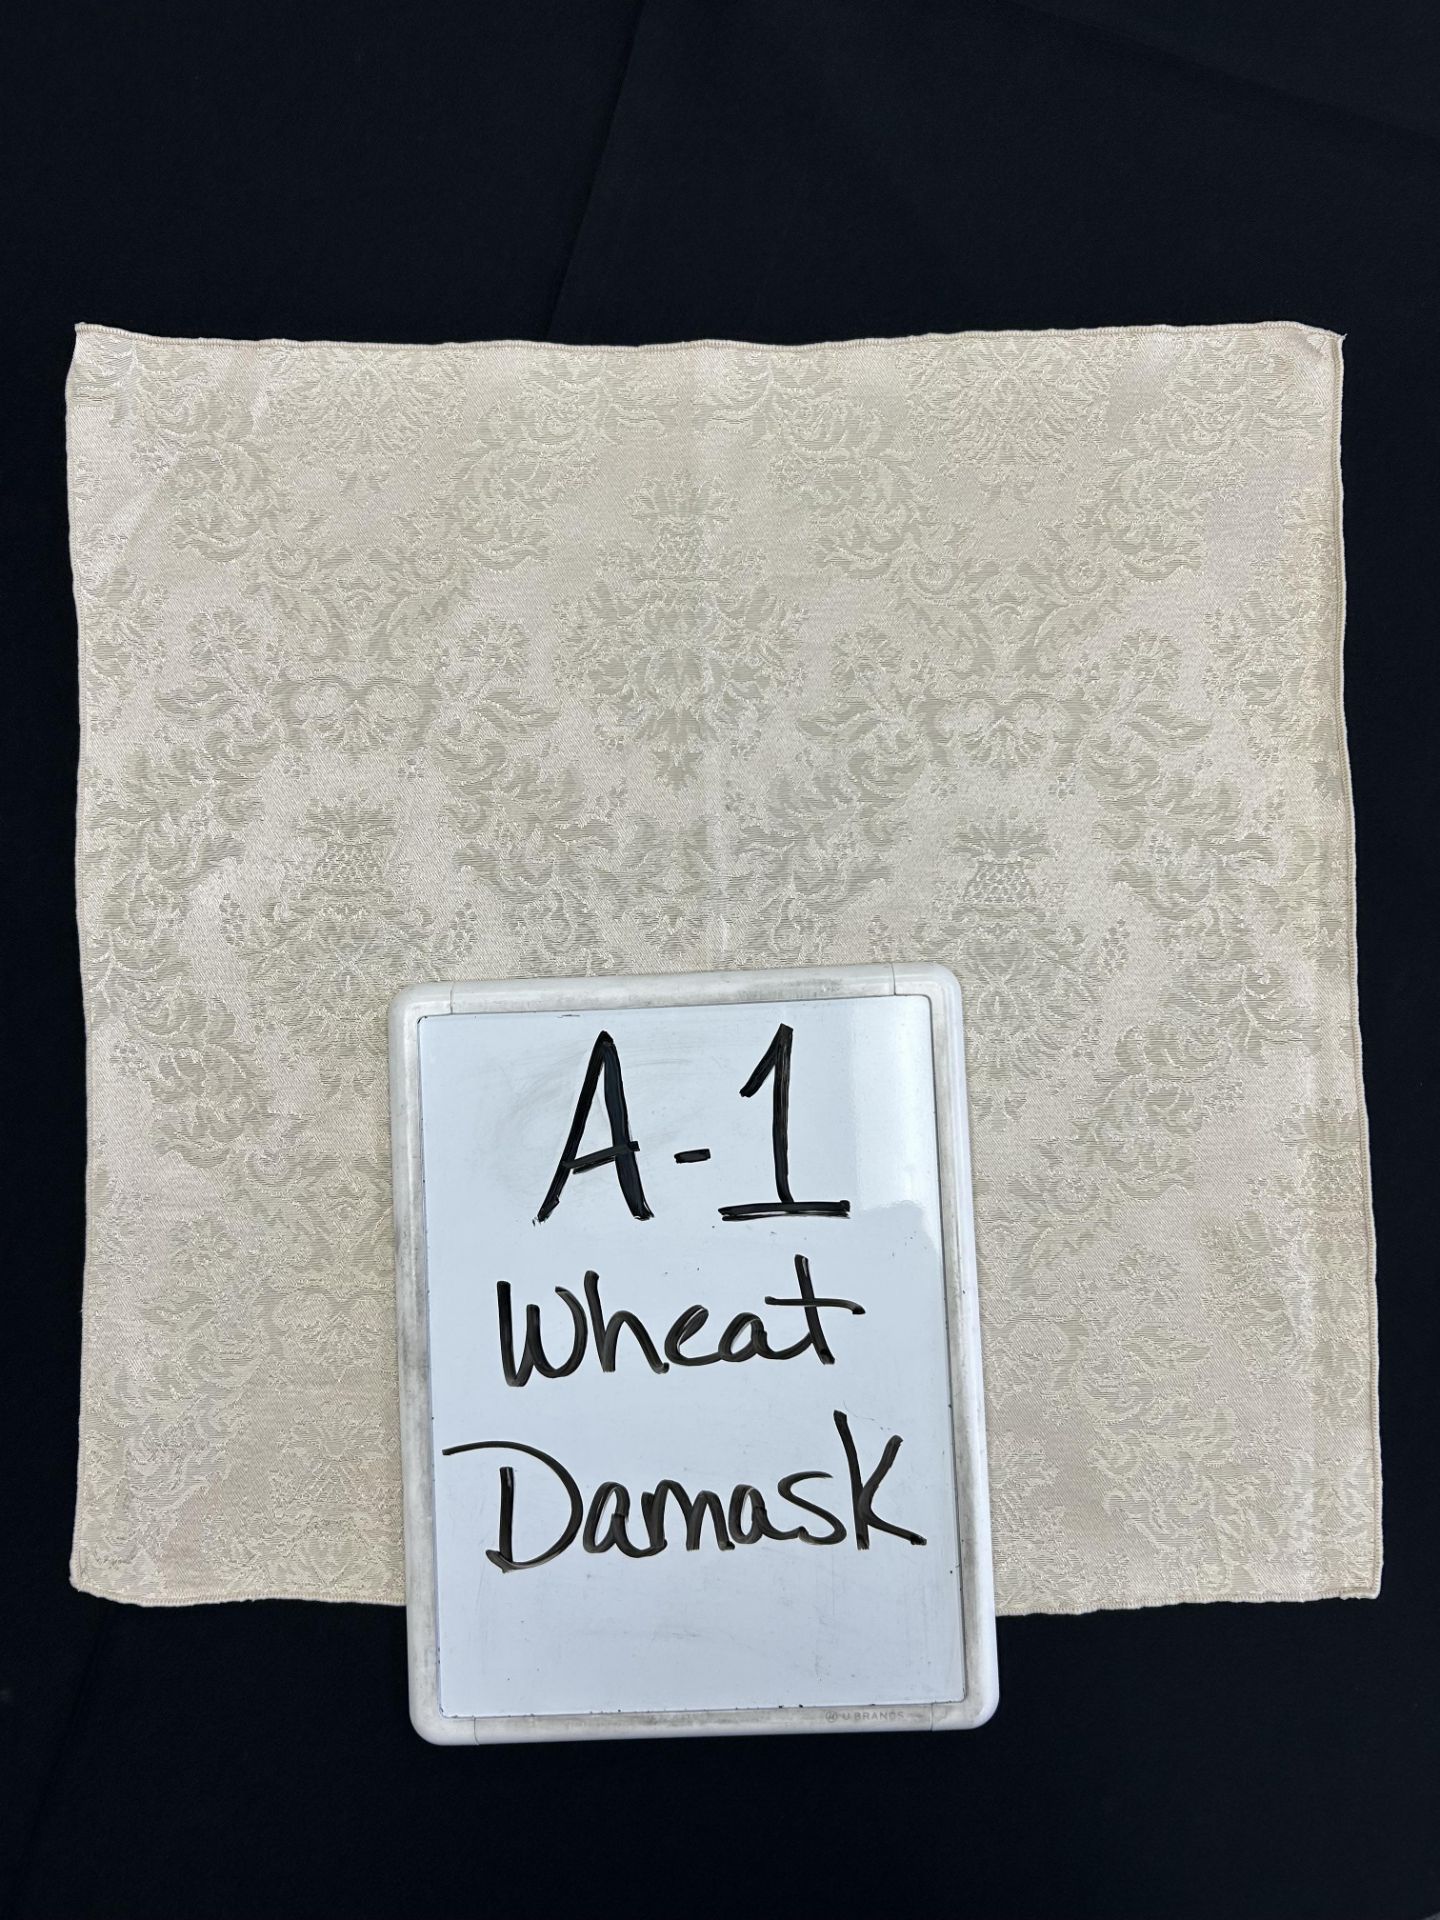 90" x 156" Banquet A-1 Wheat Damask